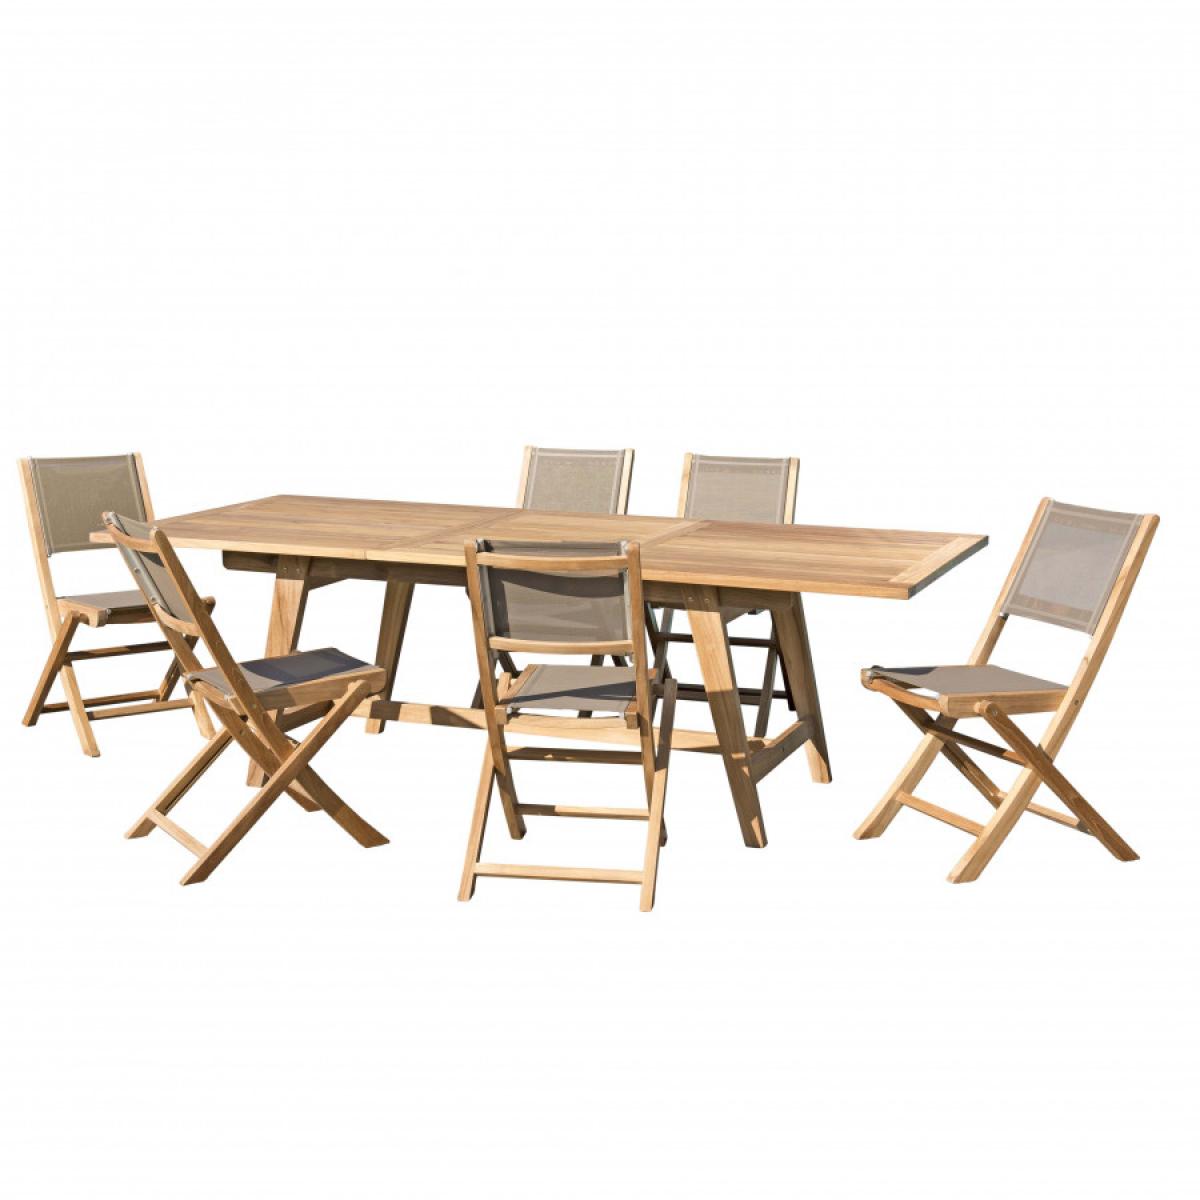 HARRIS - SALON DE JARDIN EN BOIS TECK 8/10 pers. - 1 Table extensible 180*240/100 cm et 6 chaises textilène taupe